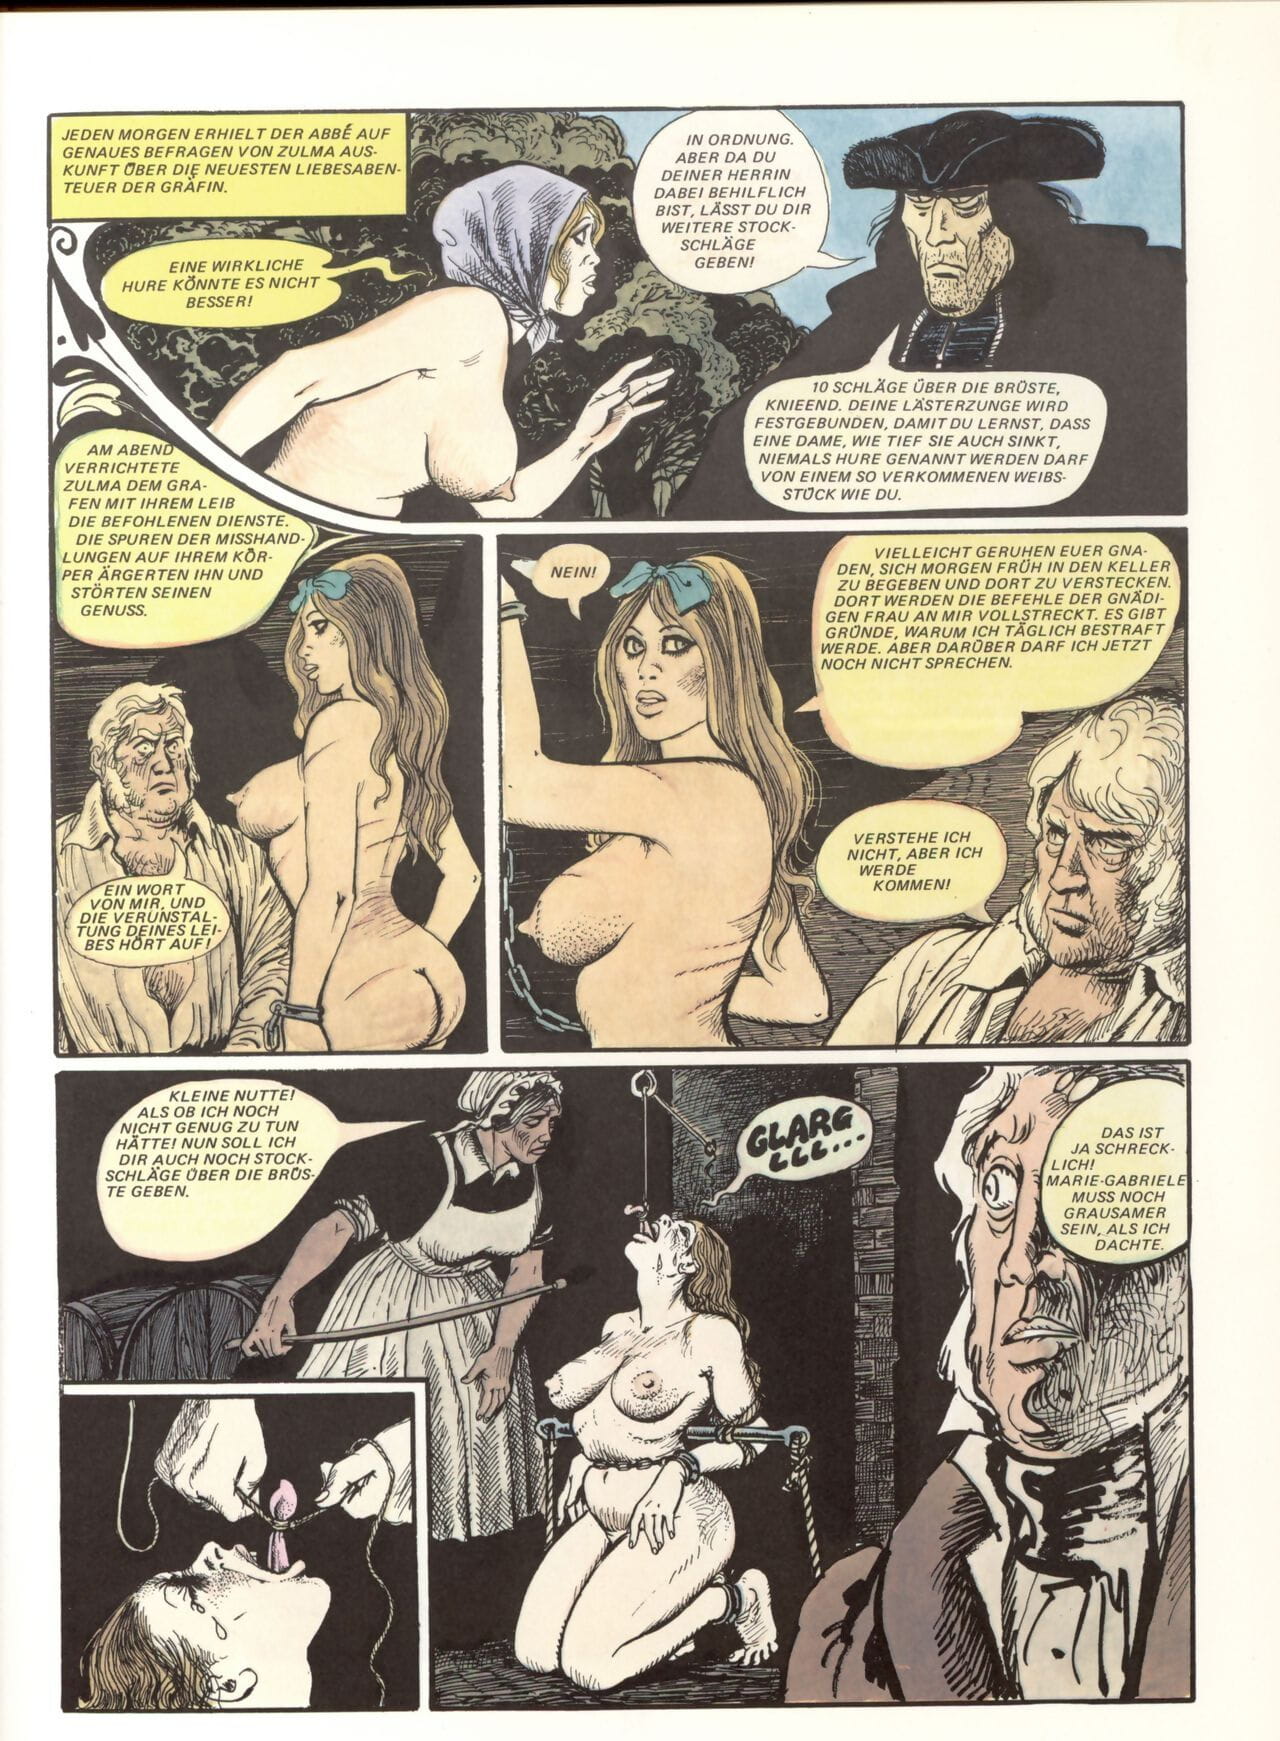 Marie Gabrielle De San eutropo #02 page 1